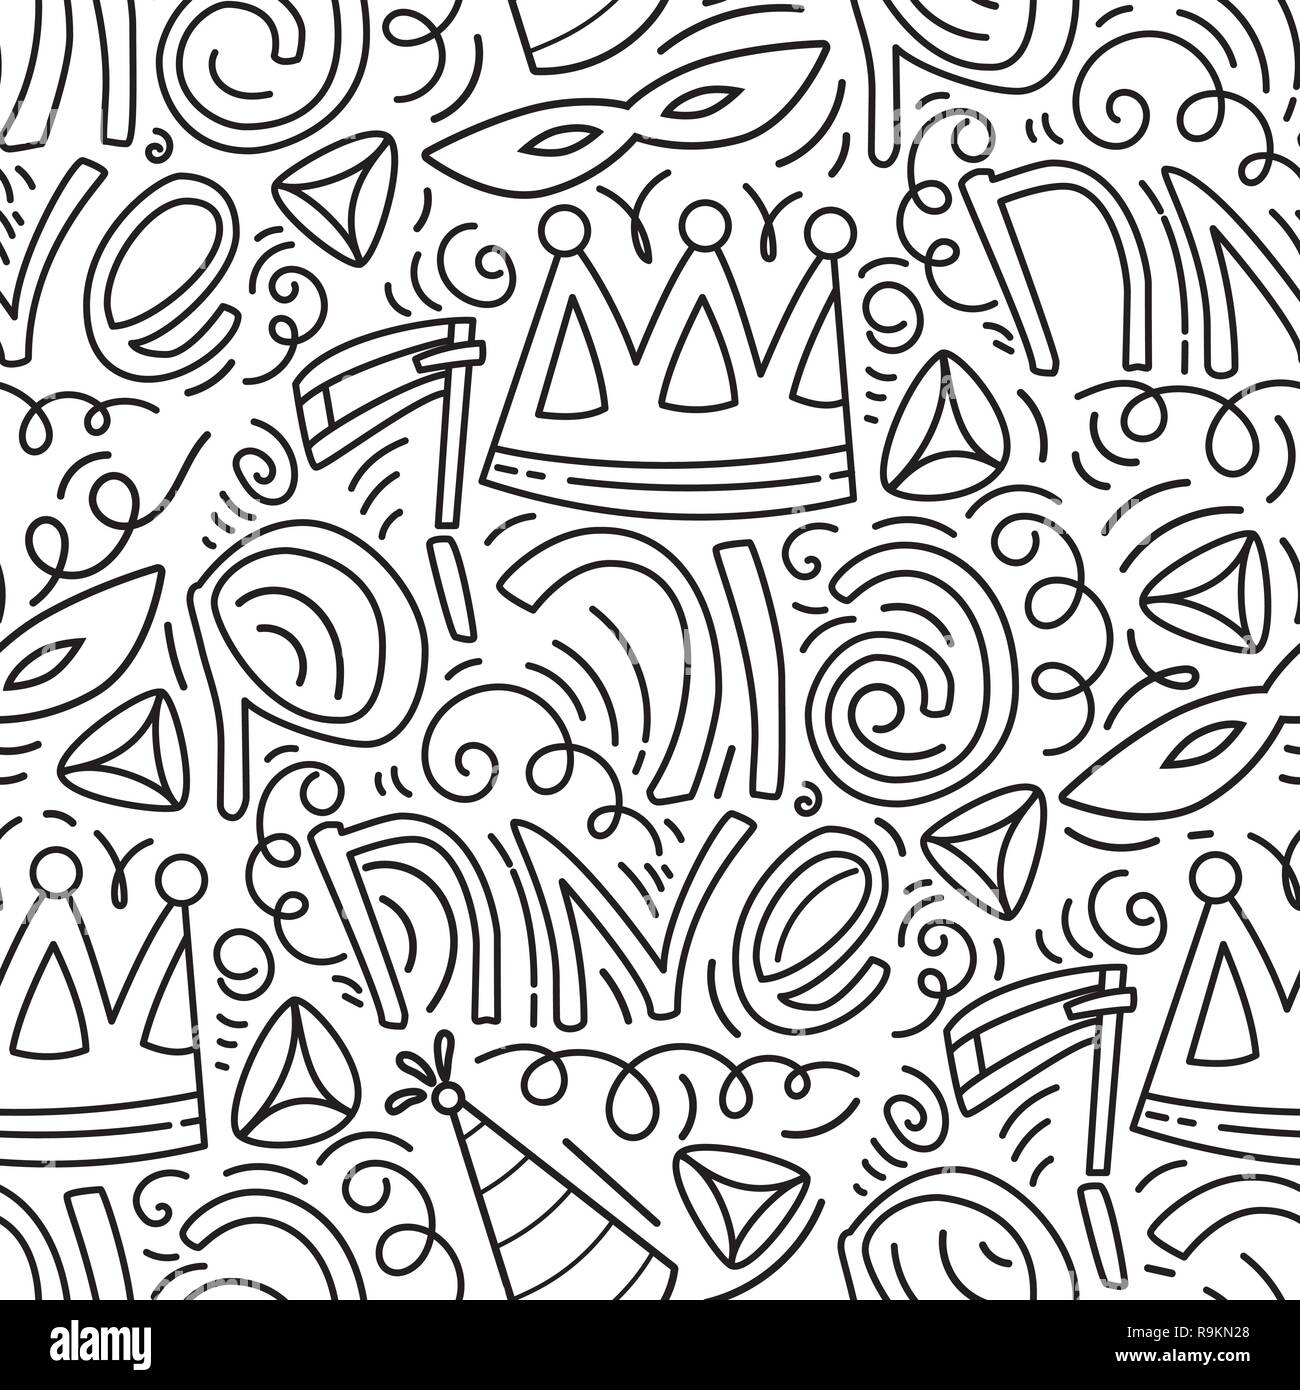 Purim nahtlose Muster mit Karneval Maske, Hüte, Krone, Lärm machen, hamantaschen und hebräischen Text glücklich Purim. Schwarze und weiße Vector Illustration in Hand gezeichnet Doodles stiyle. Stock Vektor